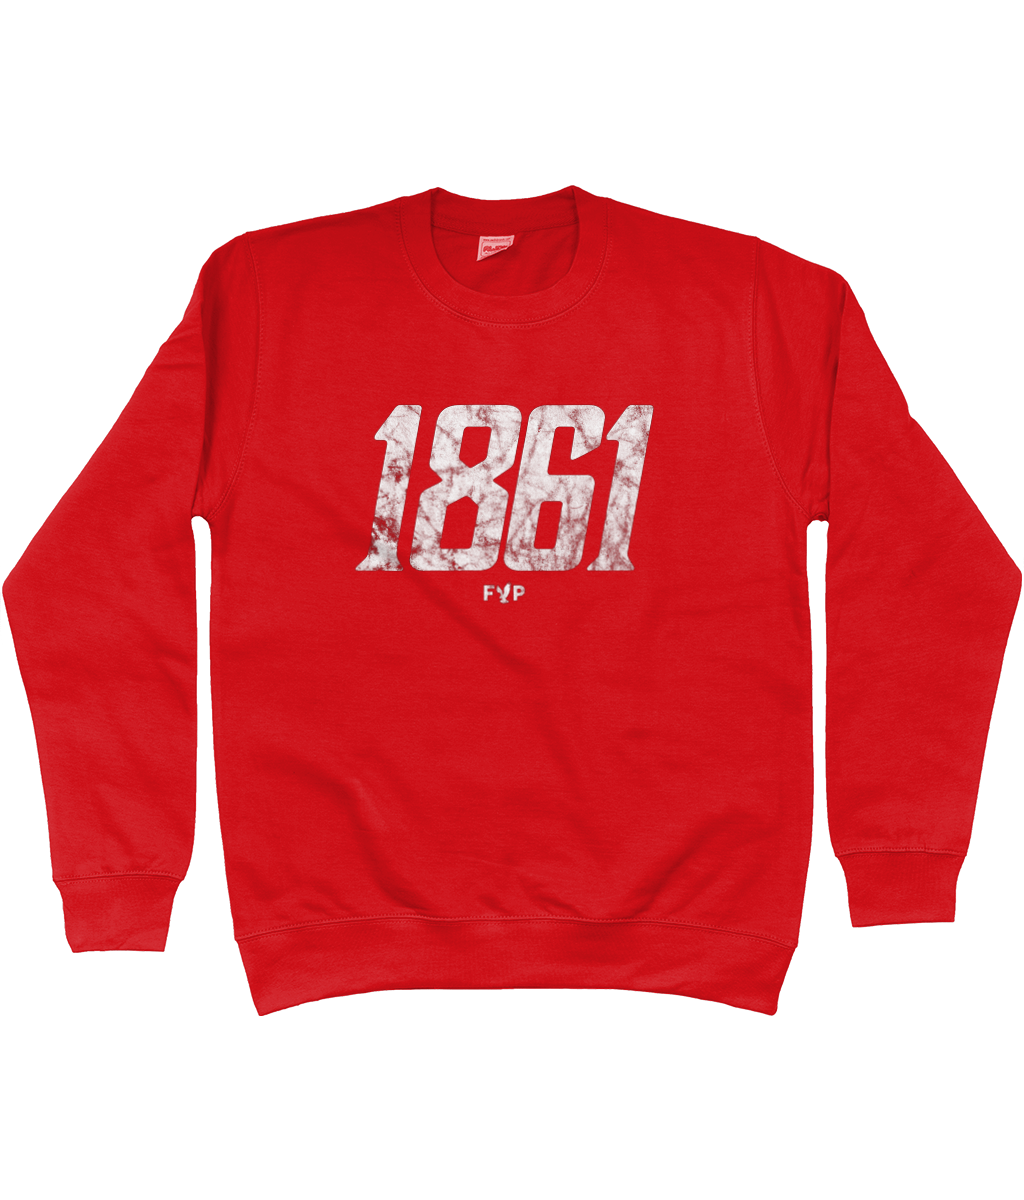 1861 - Sweatshirt